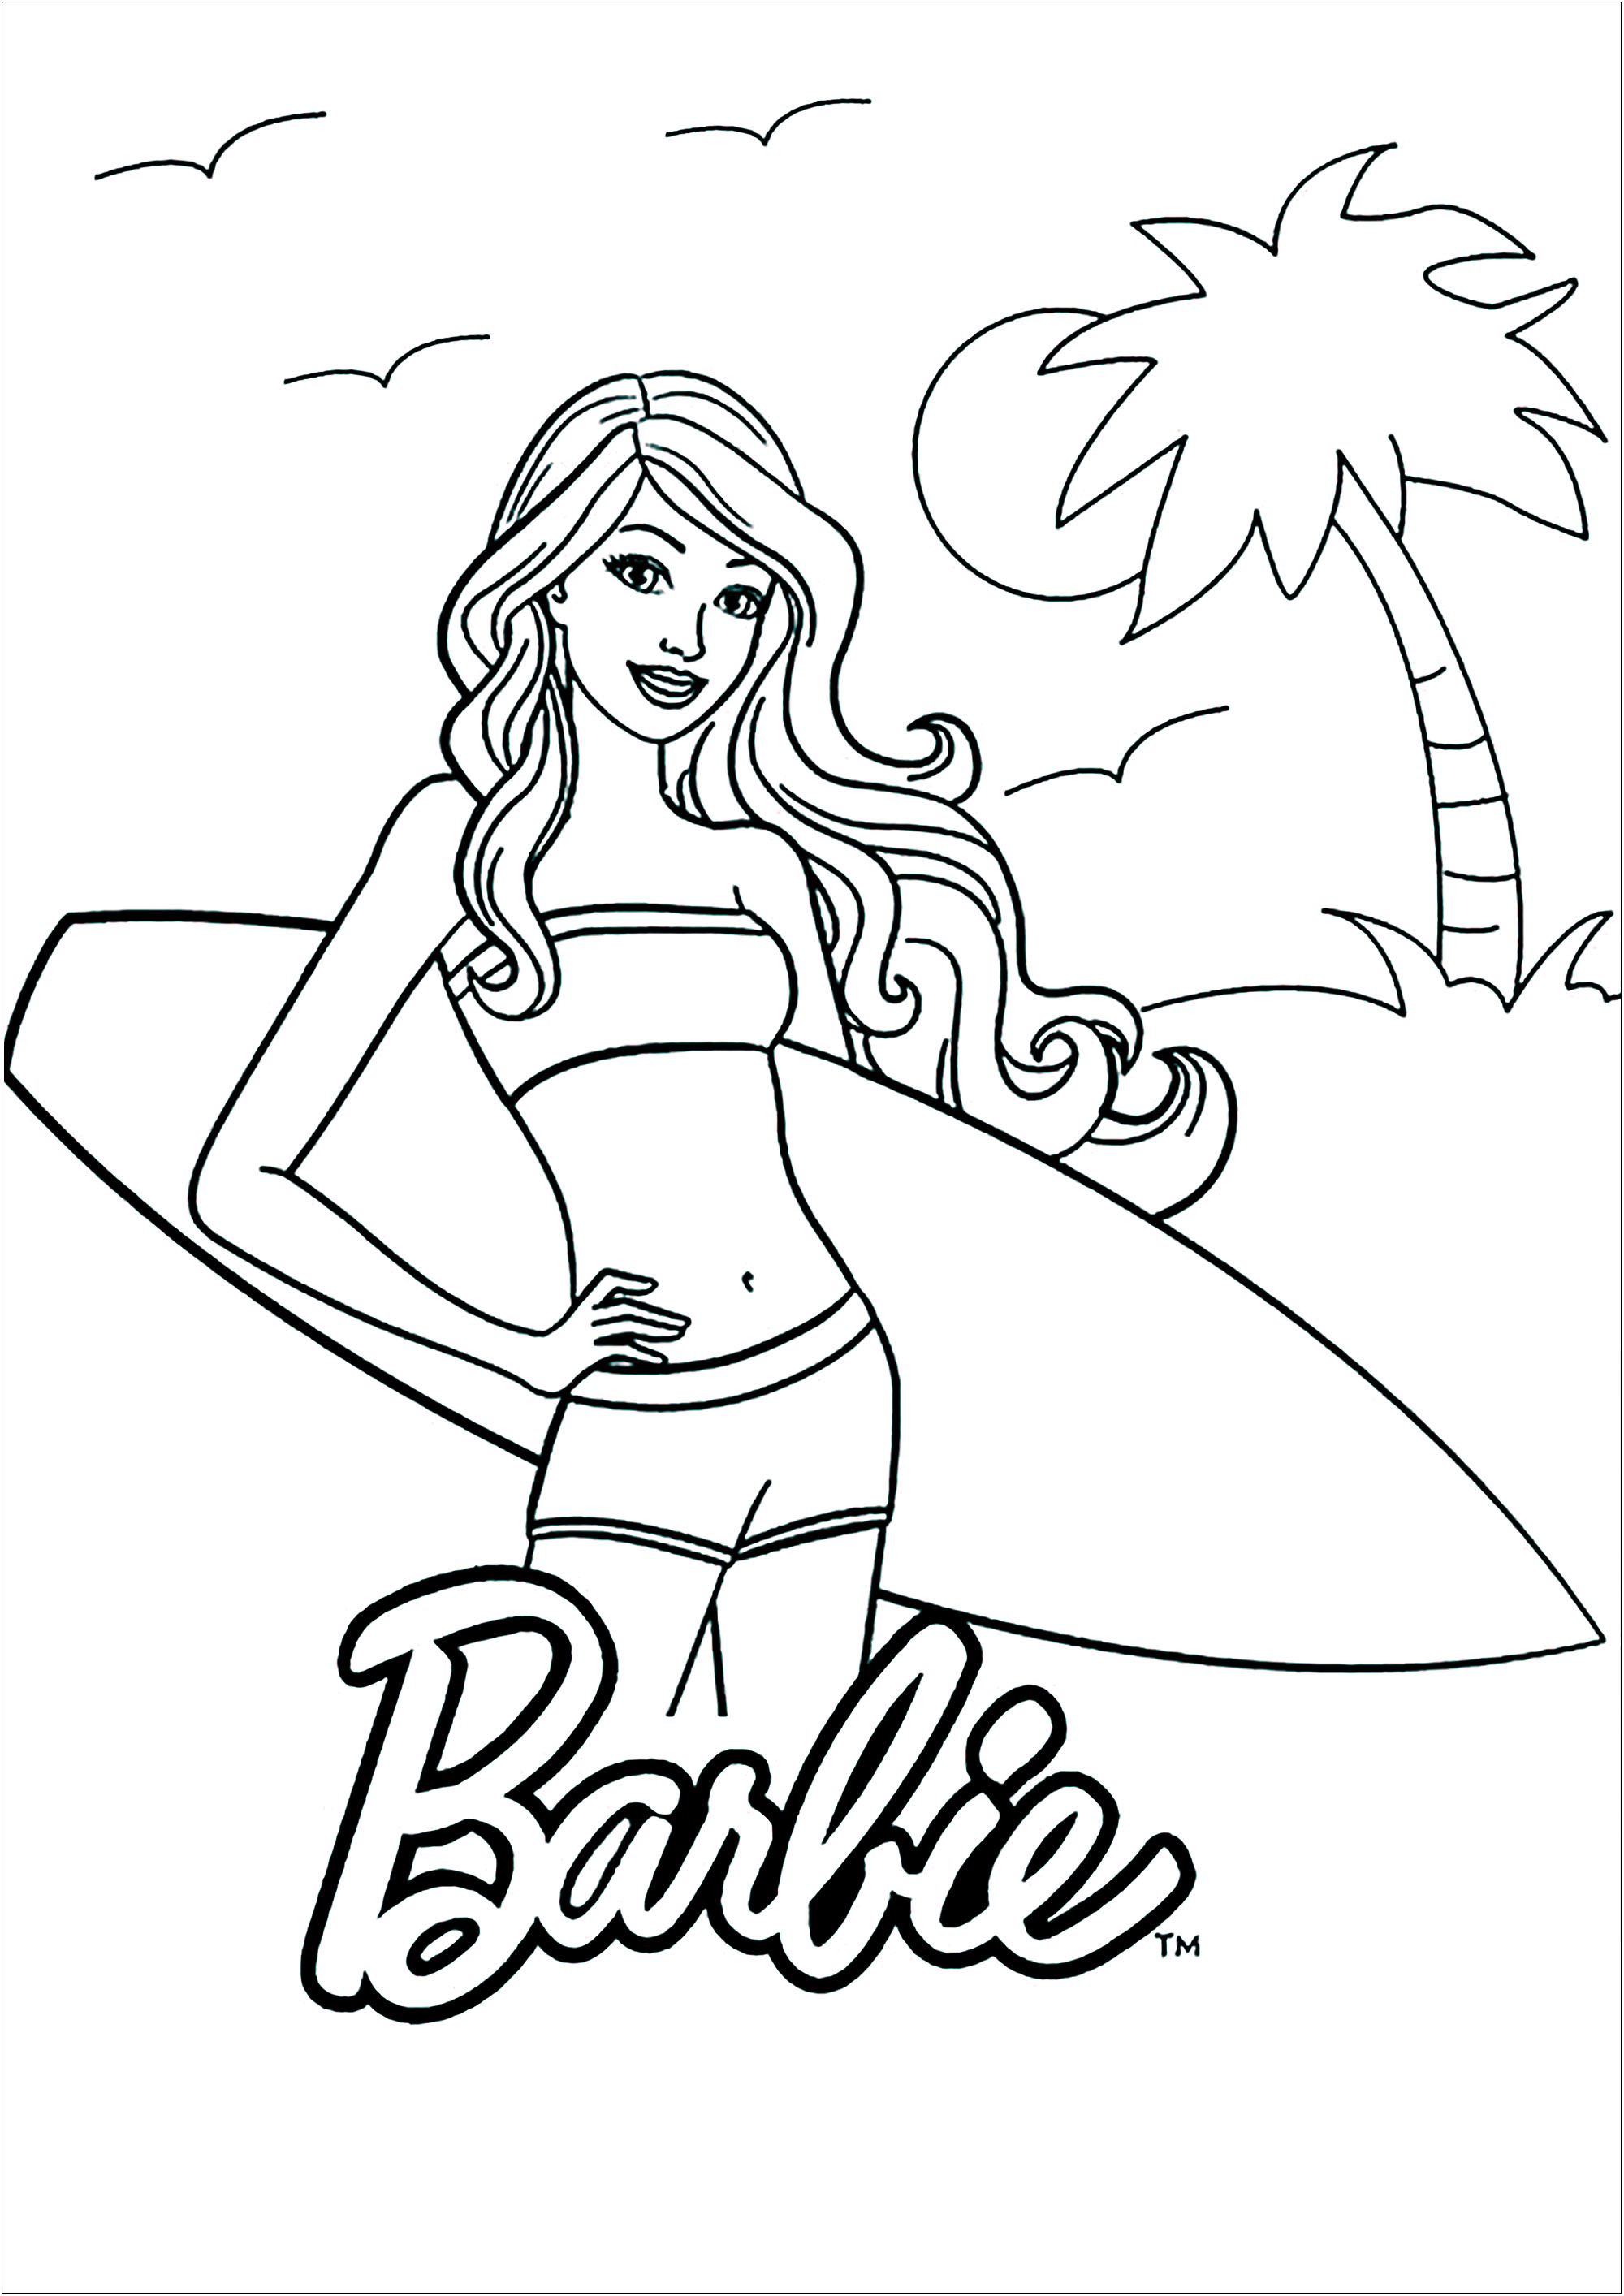 Barbie prêt à surfer sur une jolie plage. Un coloriage simple avec peu de détails